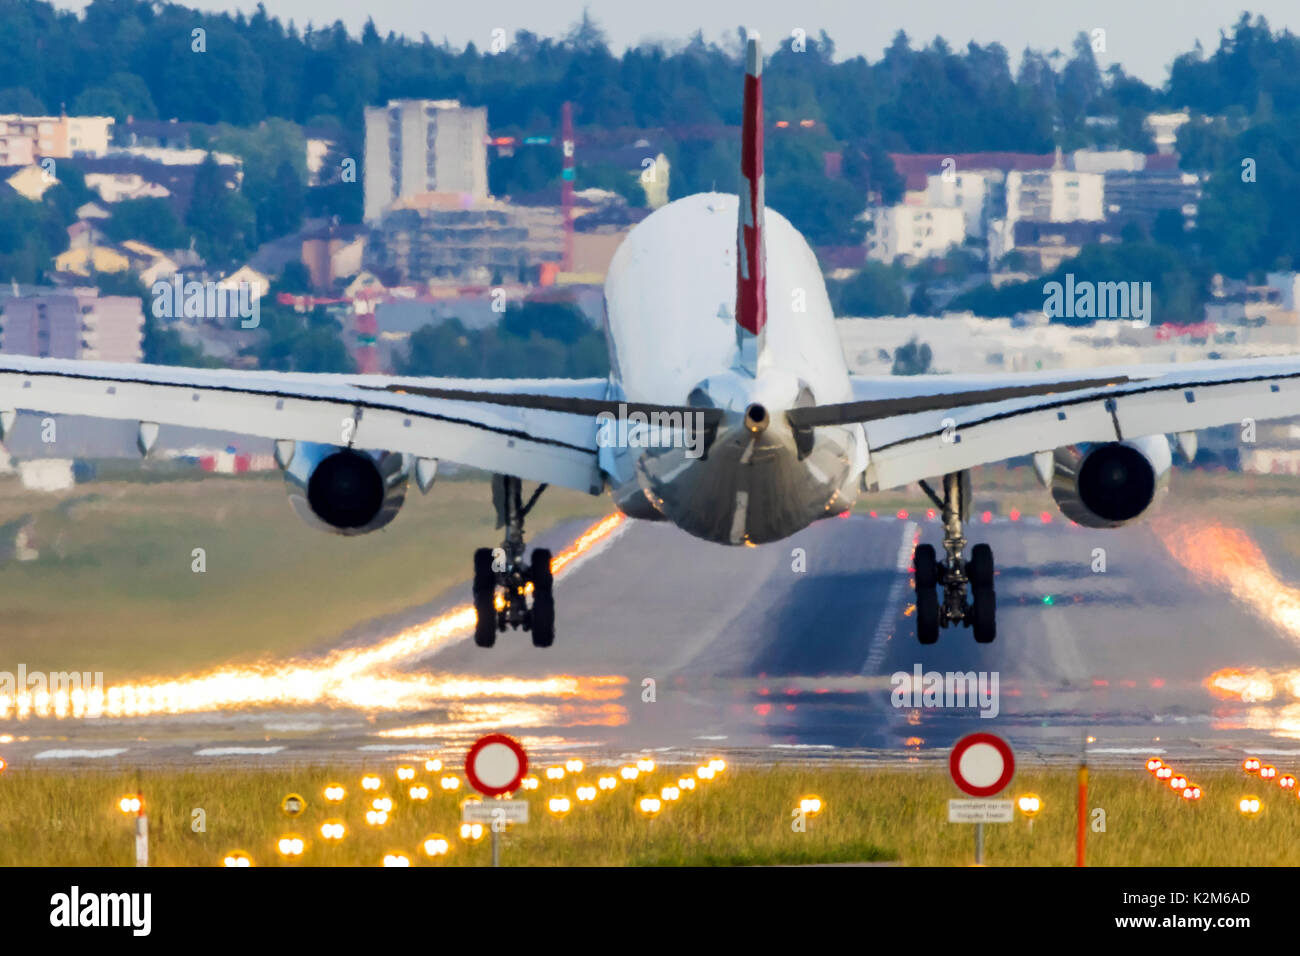 El aeropuerto de Zurich, ZRH, aterrizando en avión. Foto de stock